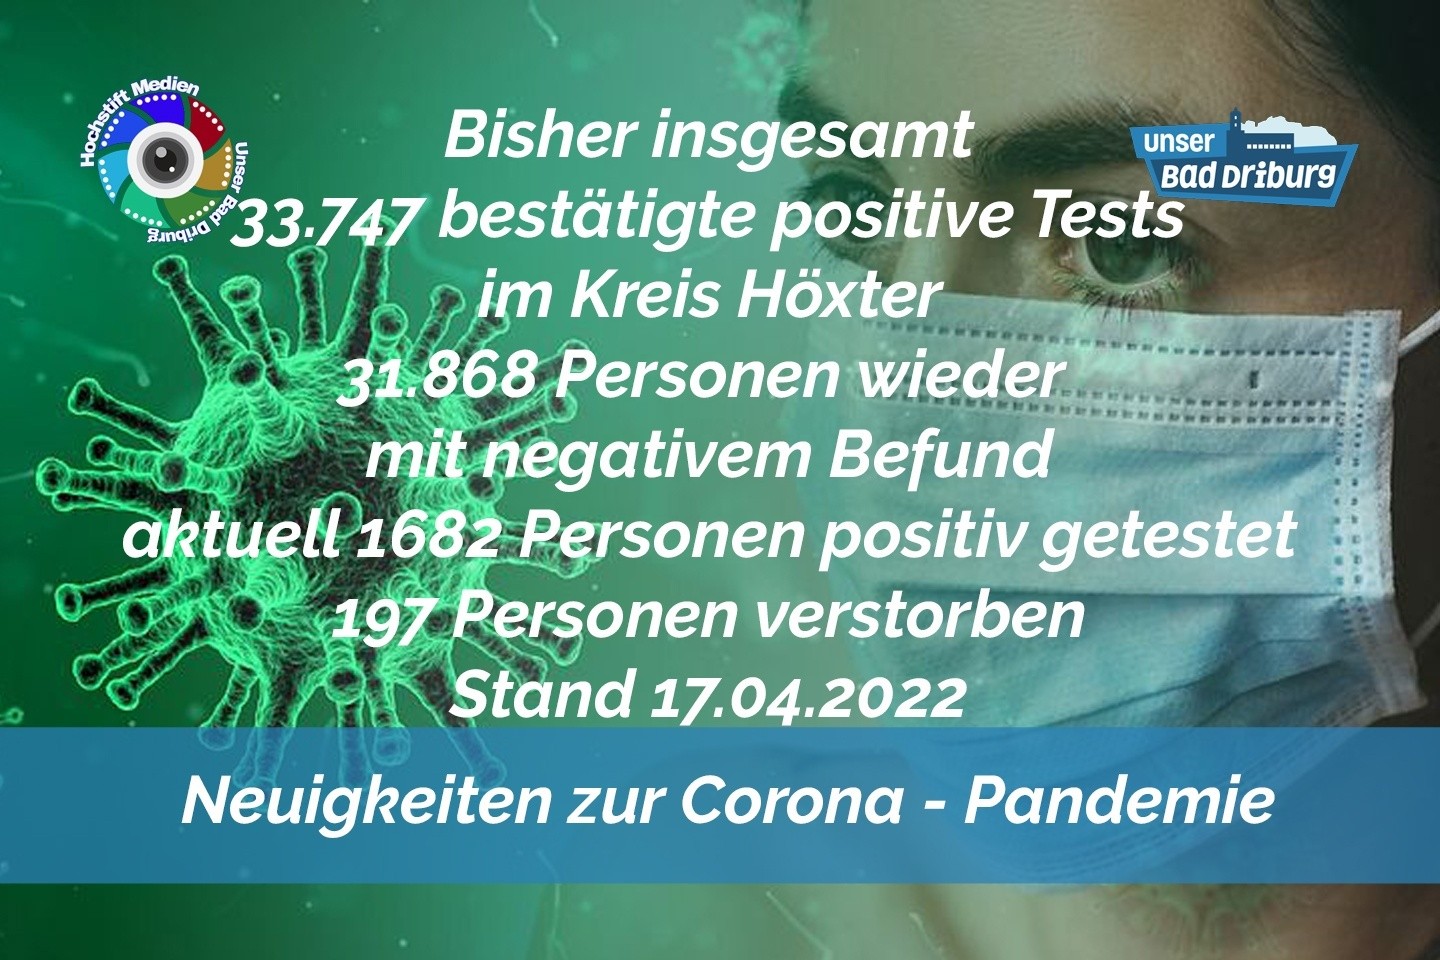 Update 17. April 2022: 125 weitere amtlich positive Tests im Kreis Höxter